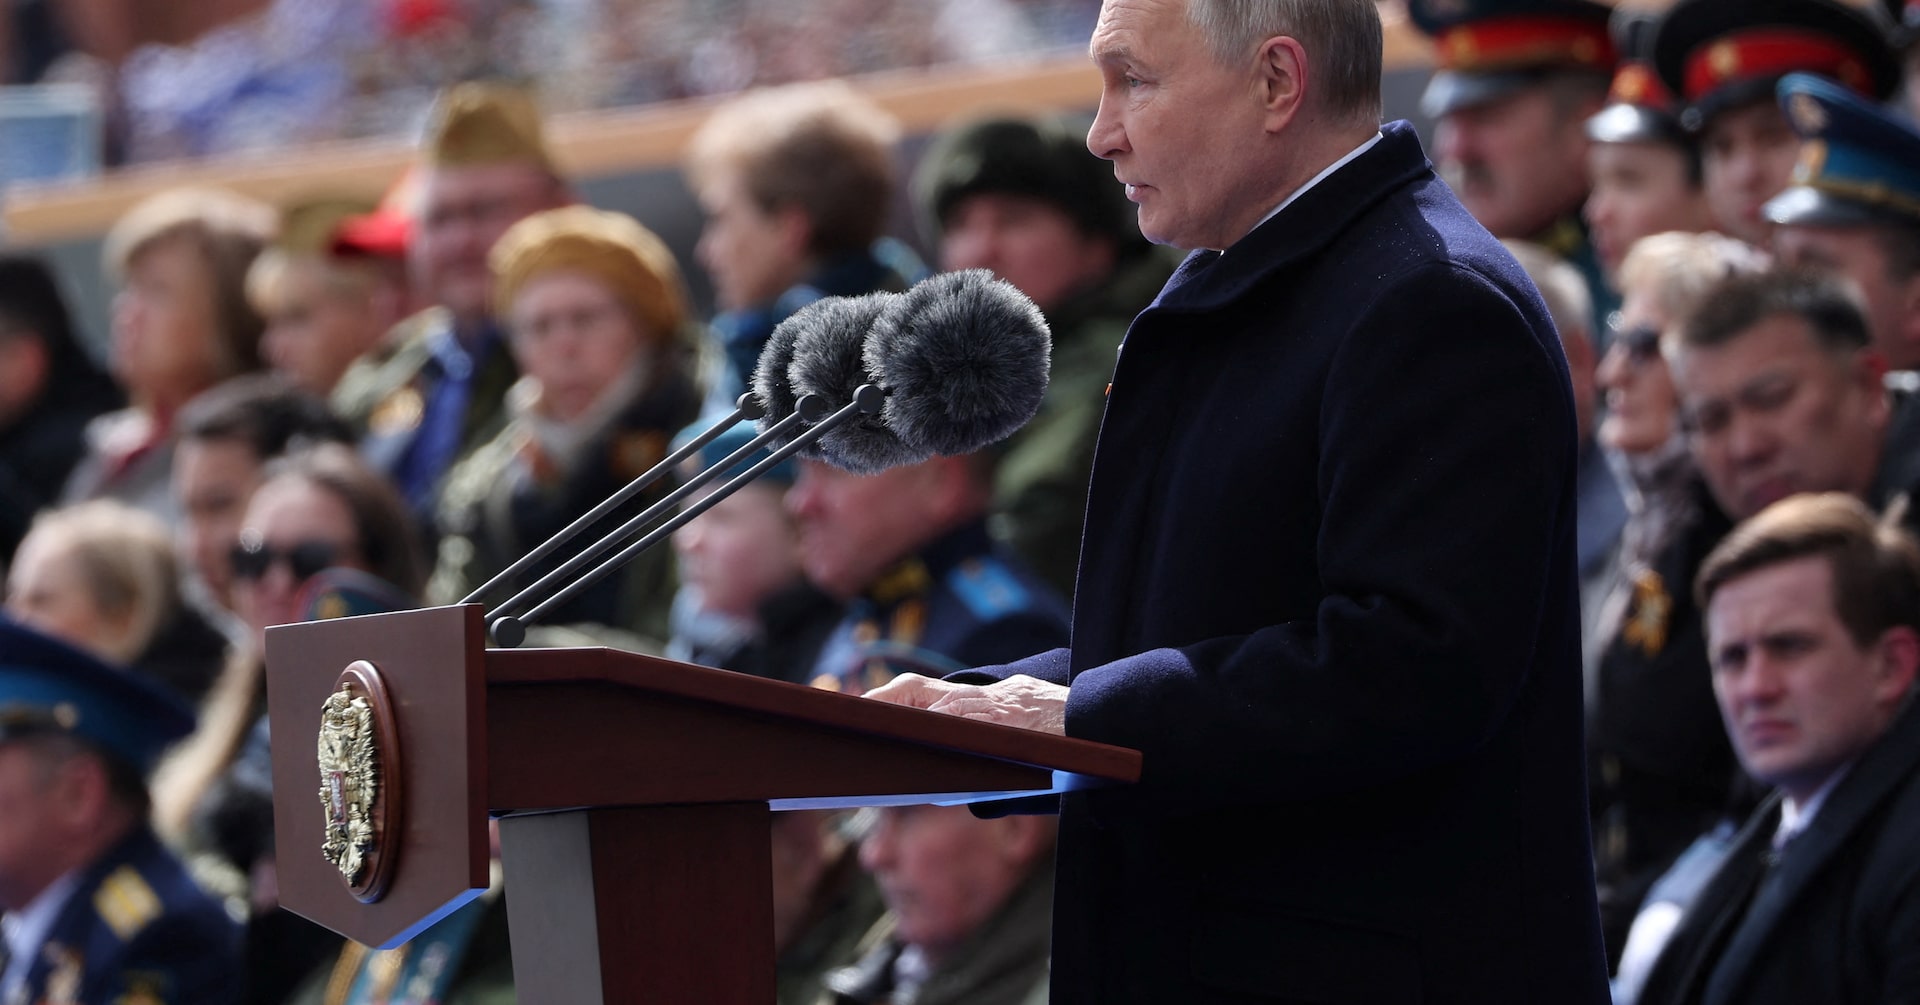 ロシア戦術核兵器の演習計画、プーチン氏「異例ではない」